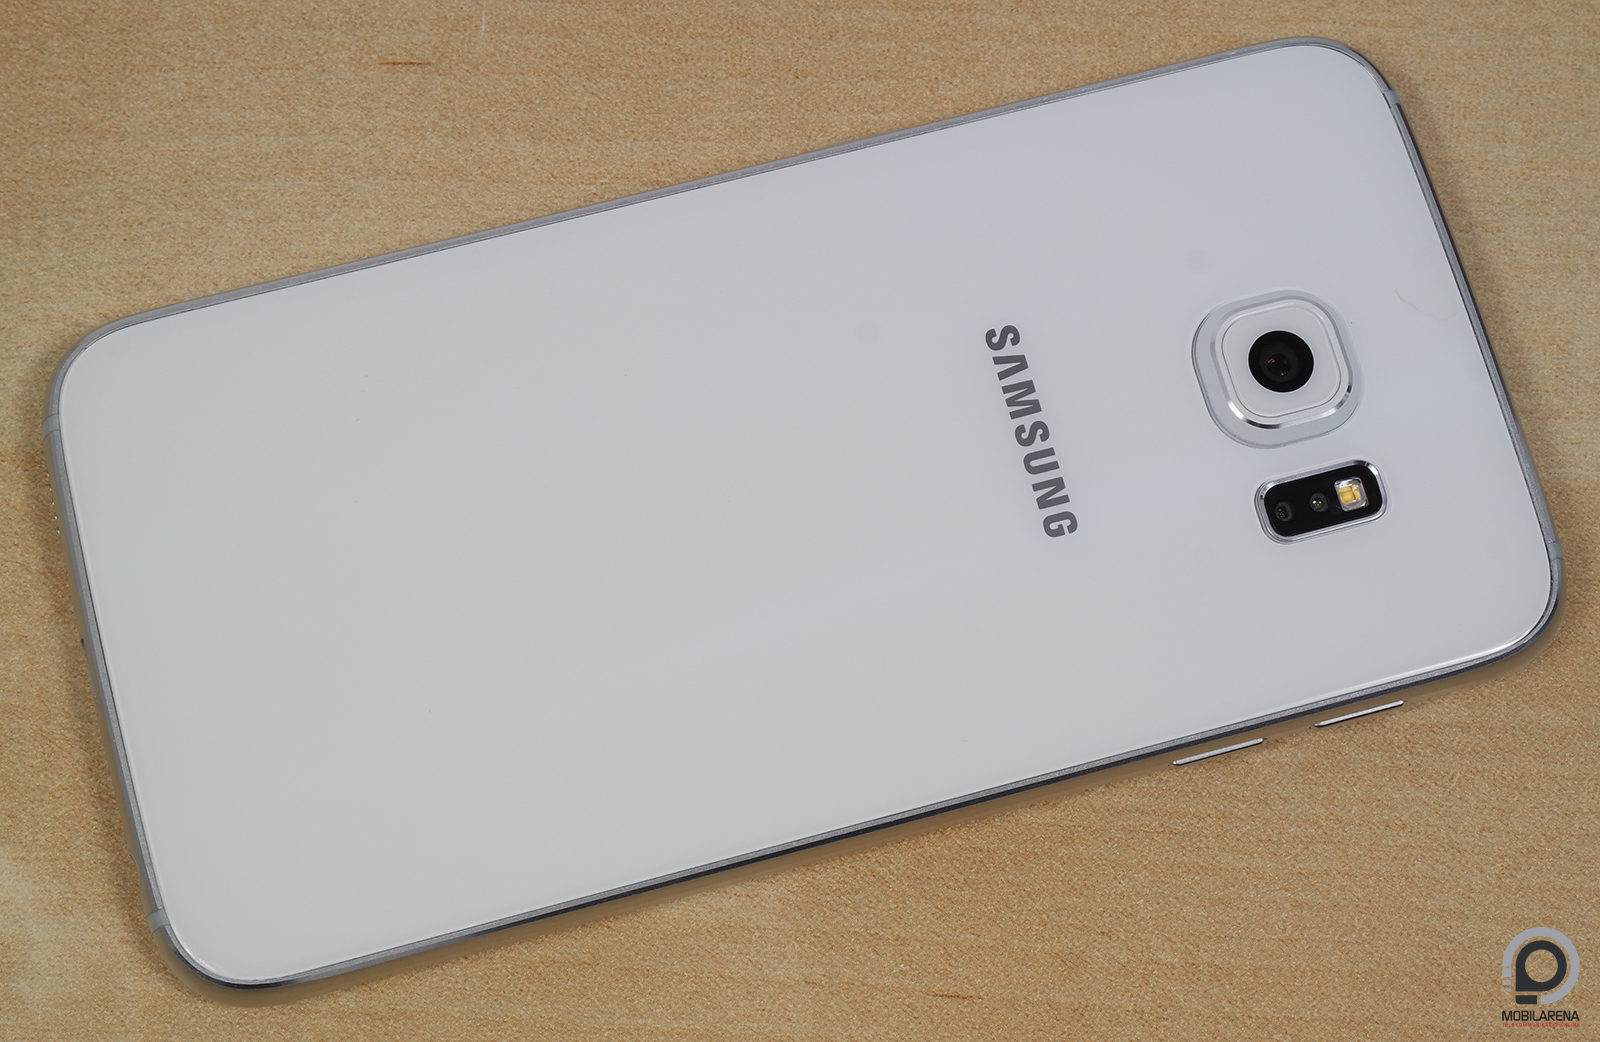 Samsung Galaxy S6 - a technológia sava-borsa - Mobilarena Okostelefon teszt  - Nyomtatóbarát verzió